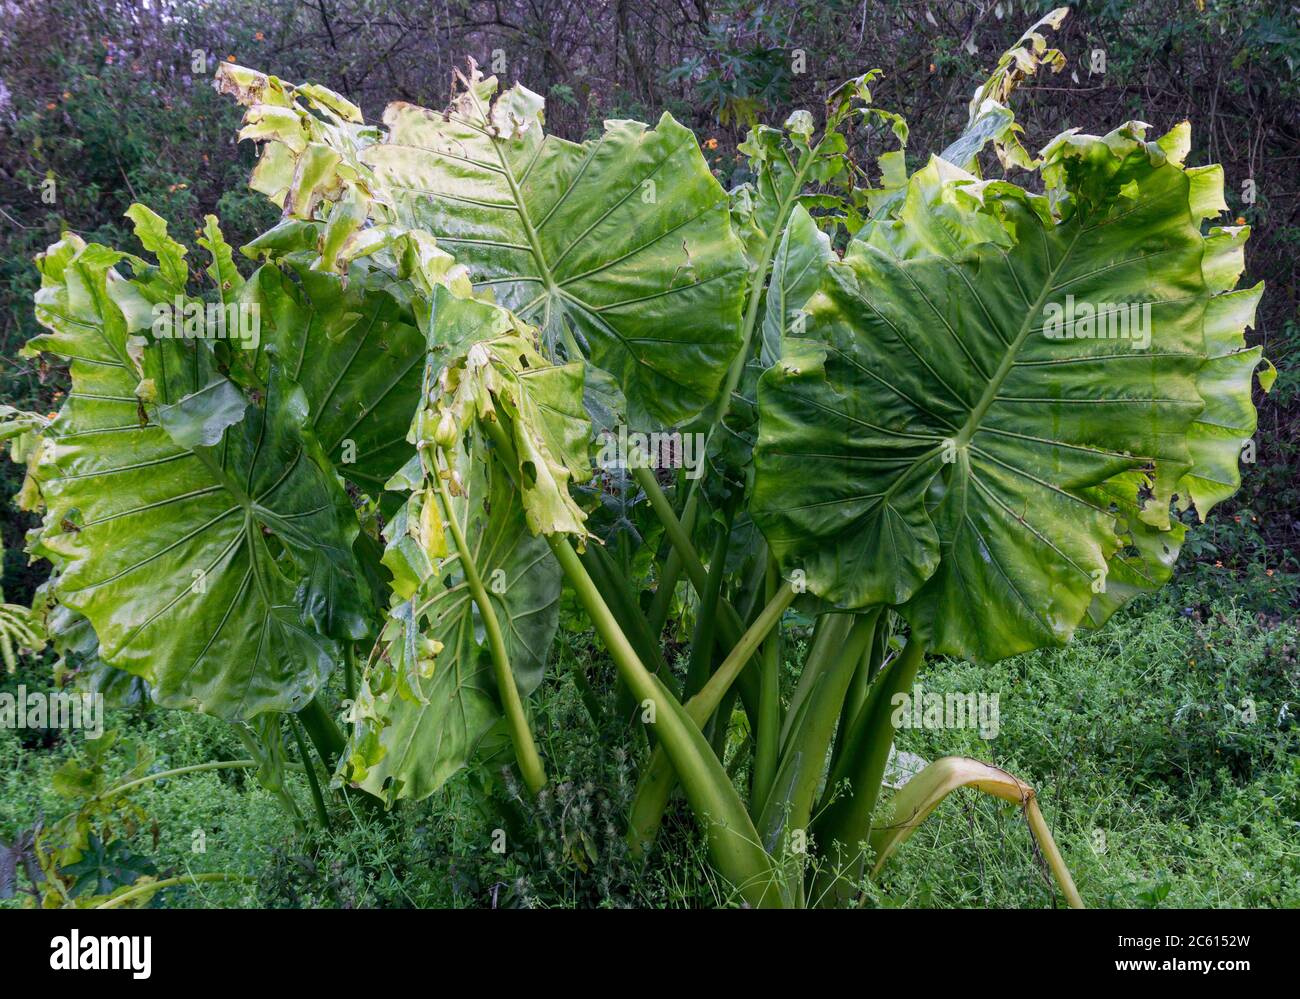 Locasia macrorrizos es una especie de planta con flores perteneciente a la familia Araceae que es nativa de los bosques tropicales de la isla del sudeste asiático, Nueva Guin Foto de stock